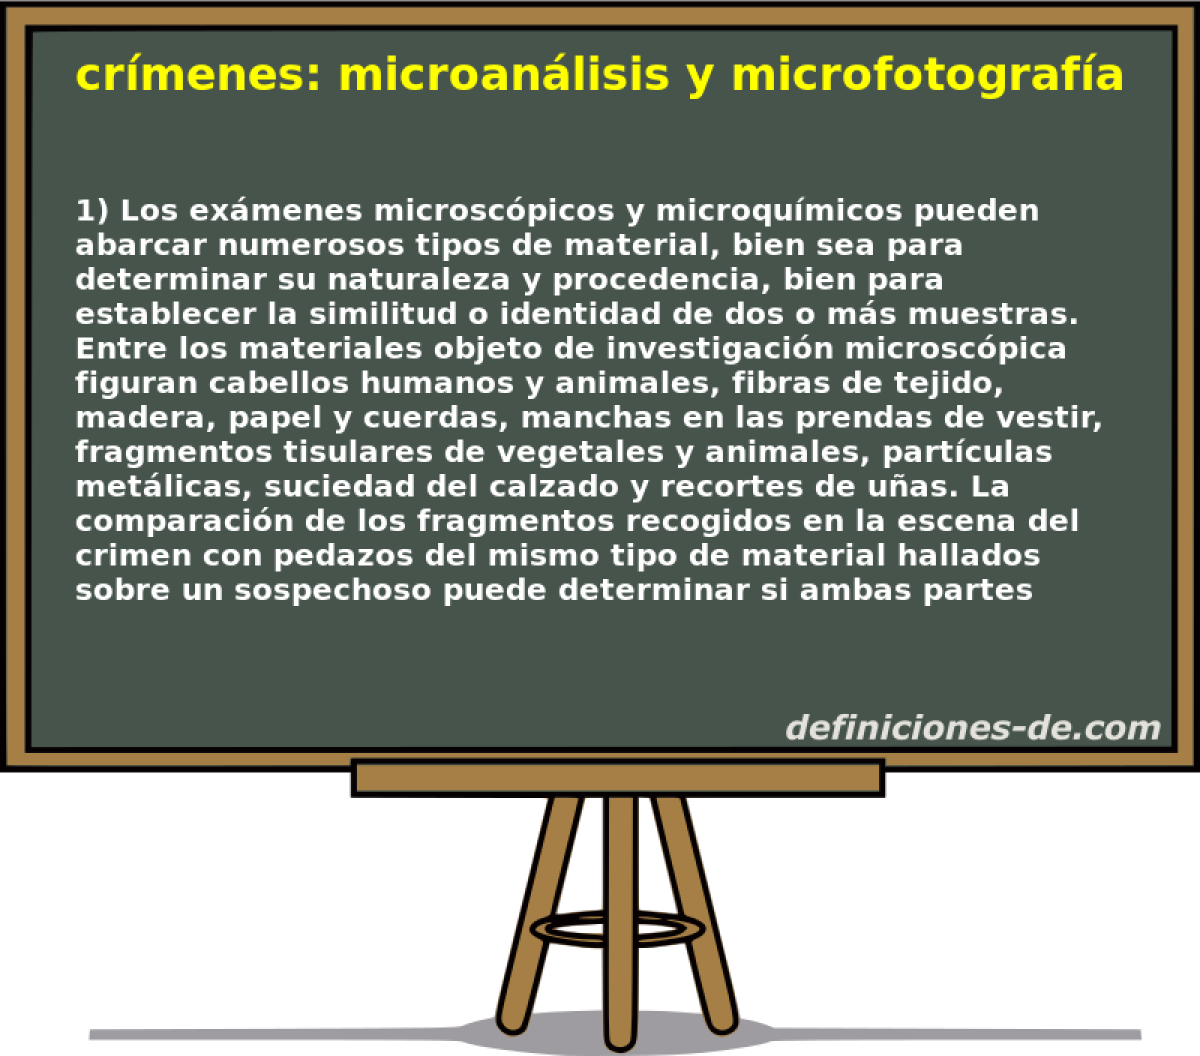 crmenes: microanlisis y microfotografa comparada 